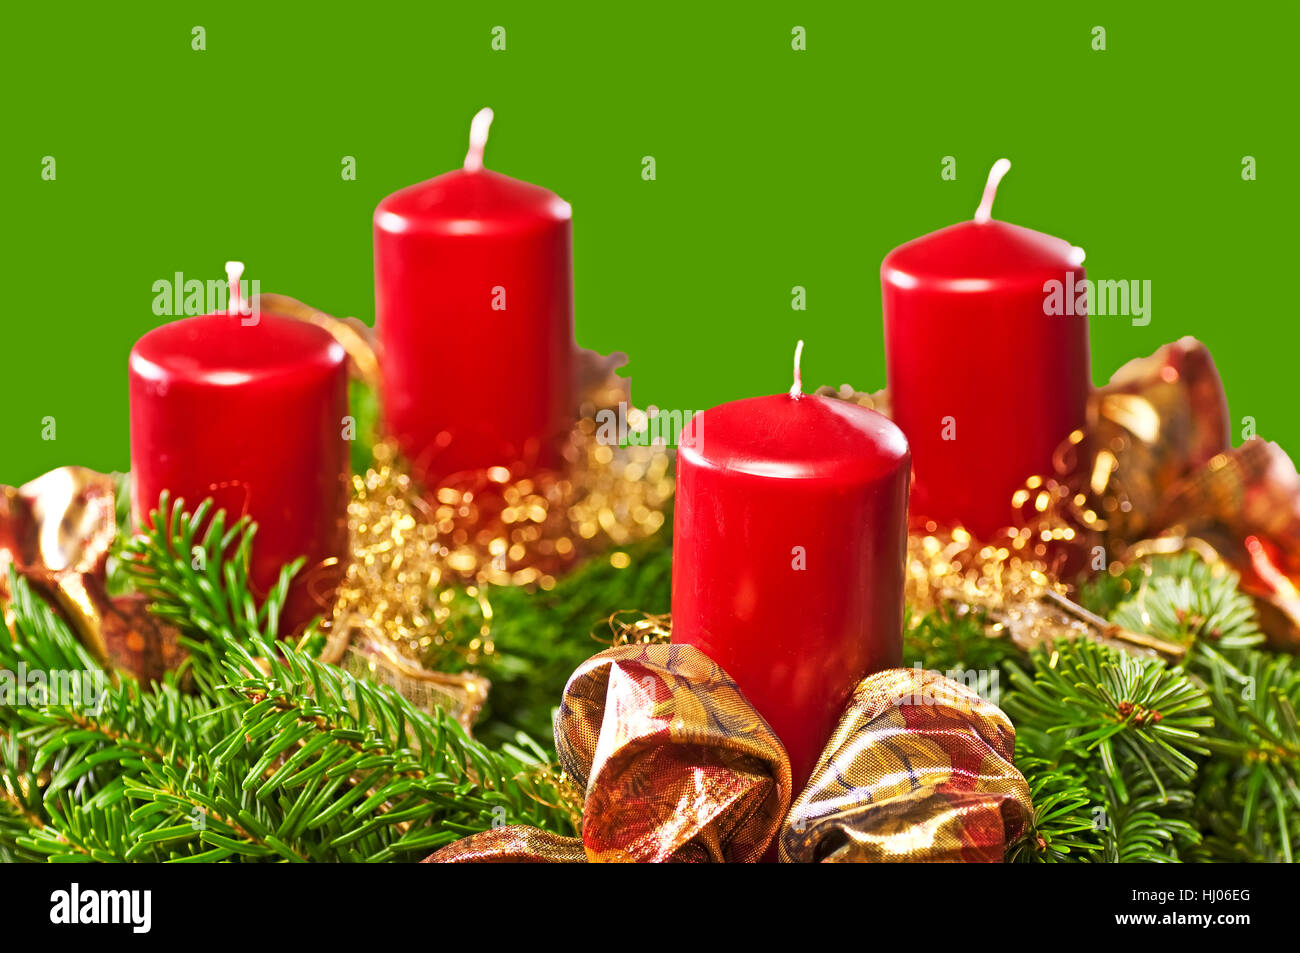 Kerze, Schmuck, Schmuck, gefesselt, gebunden, Handwerk, Weihnachten,  Adventskranz Stockfotografie - Alamy